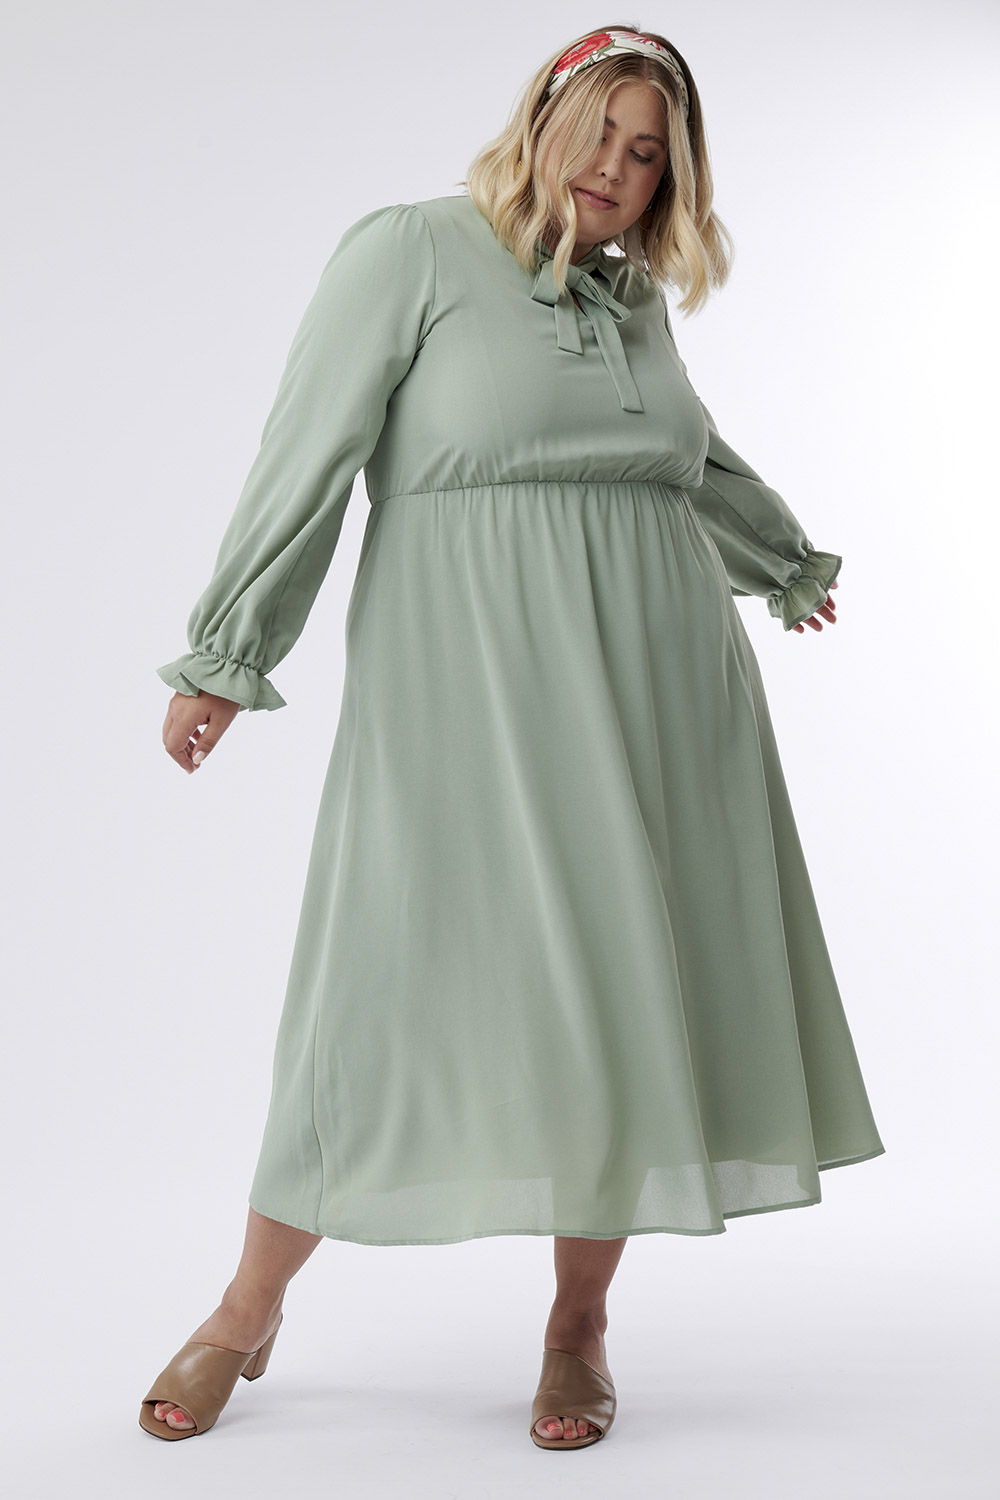 Green Clothes - Charlotte de soins lavable taille adulte - Sebio